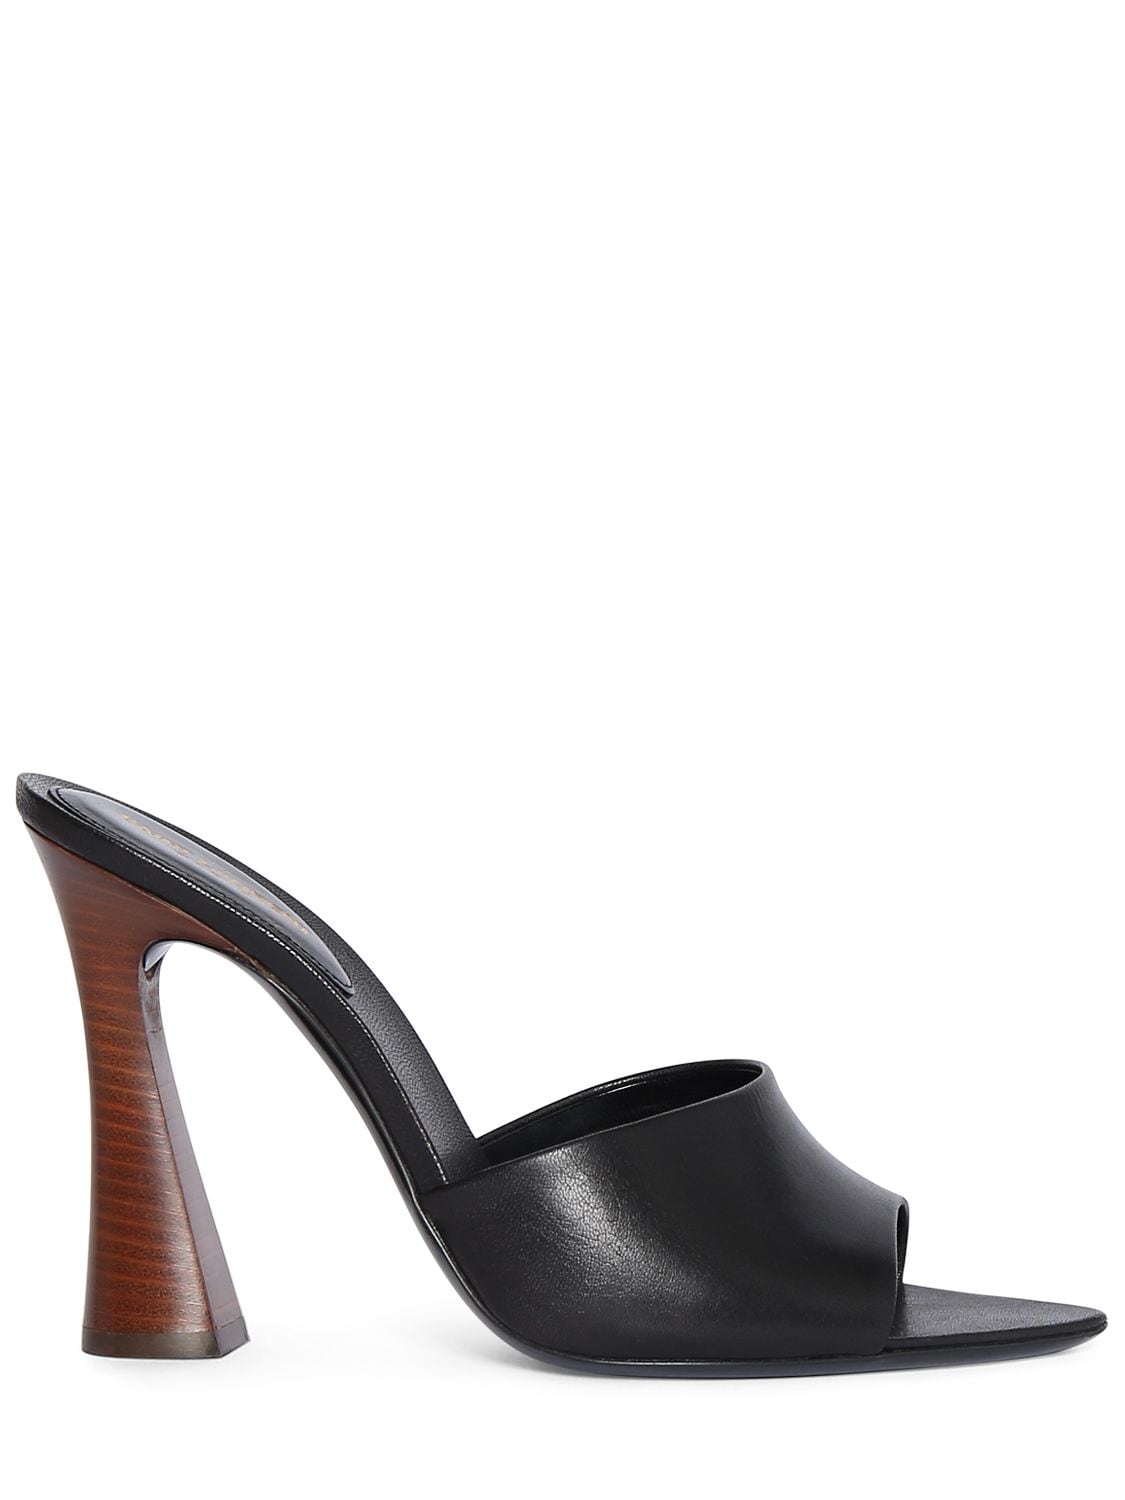 Shop Saint Laurent 105mm Suite Leather Mule Sandals In Black